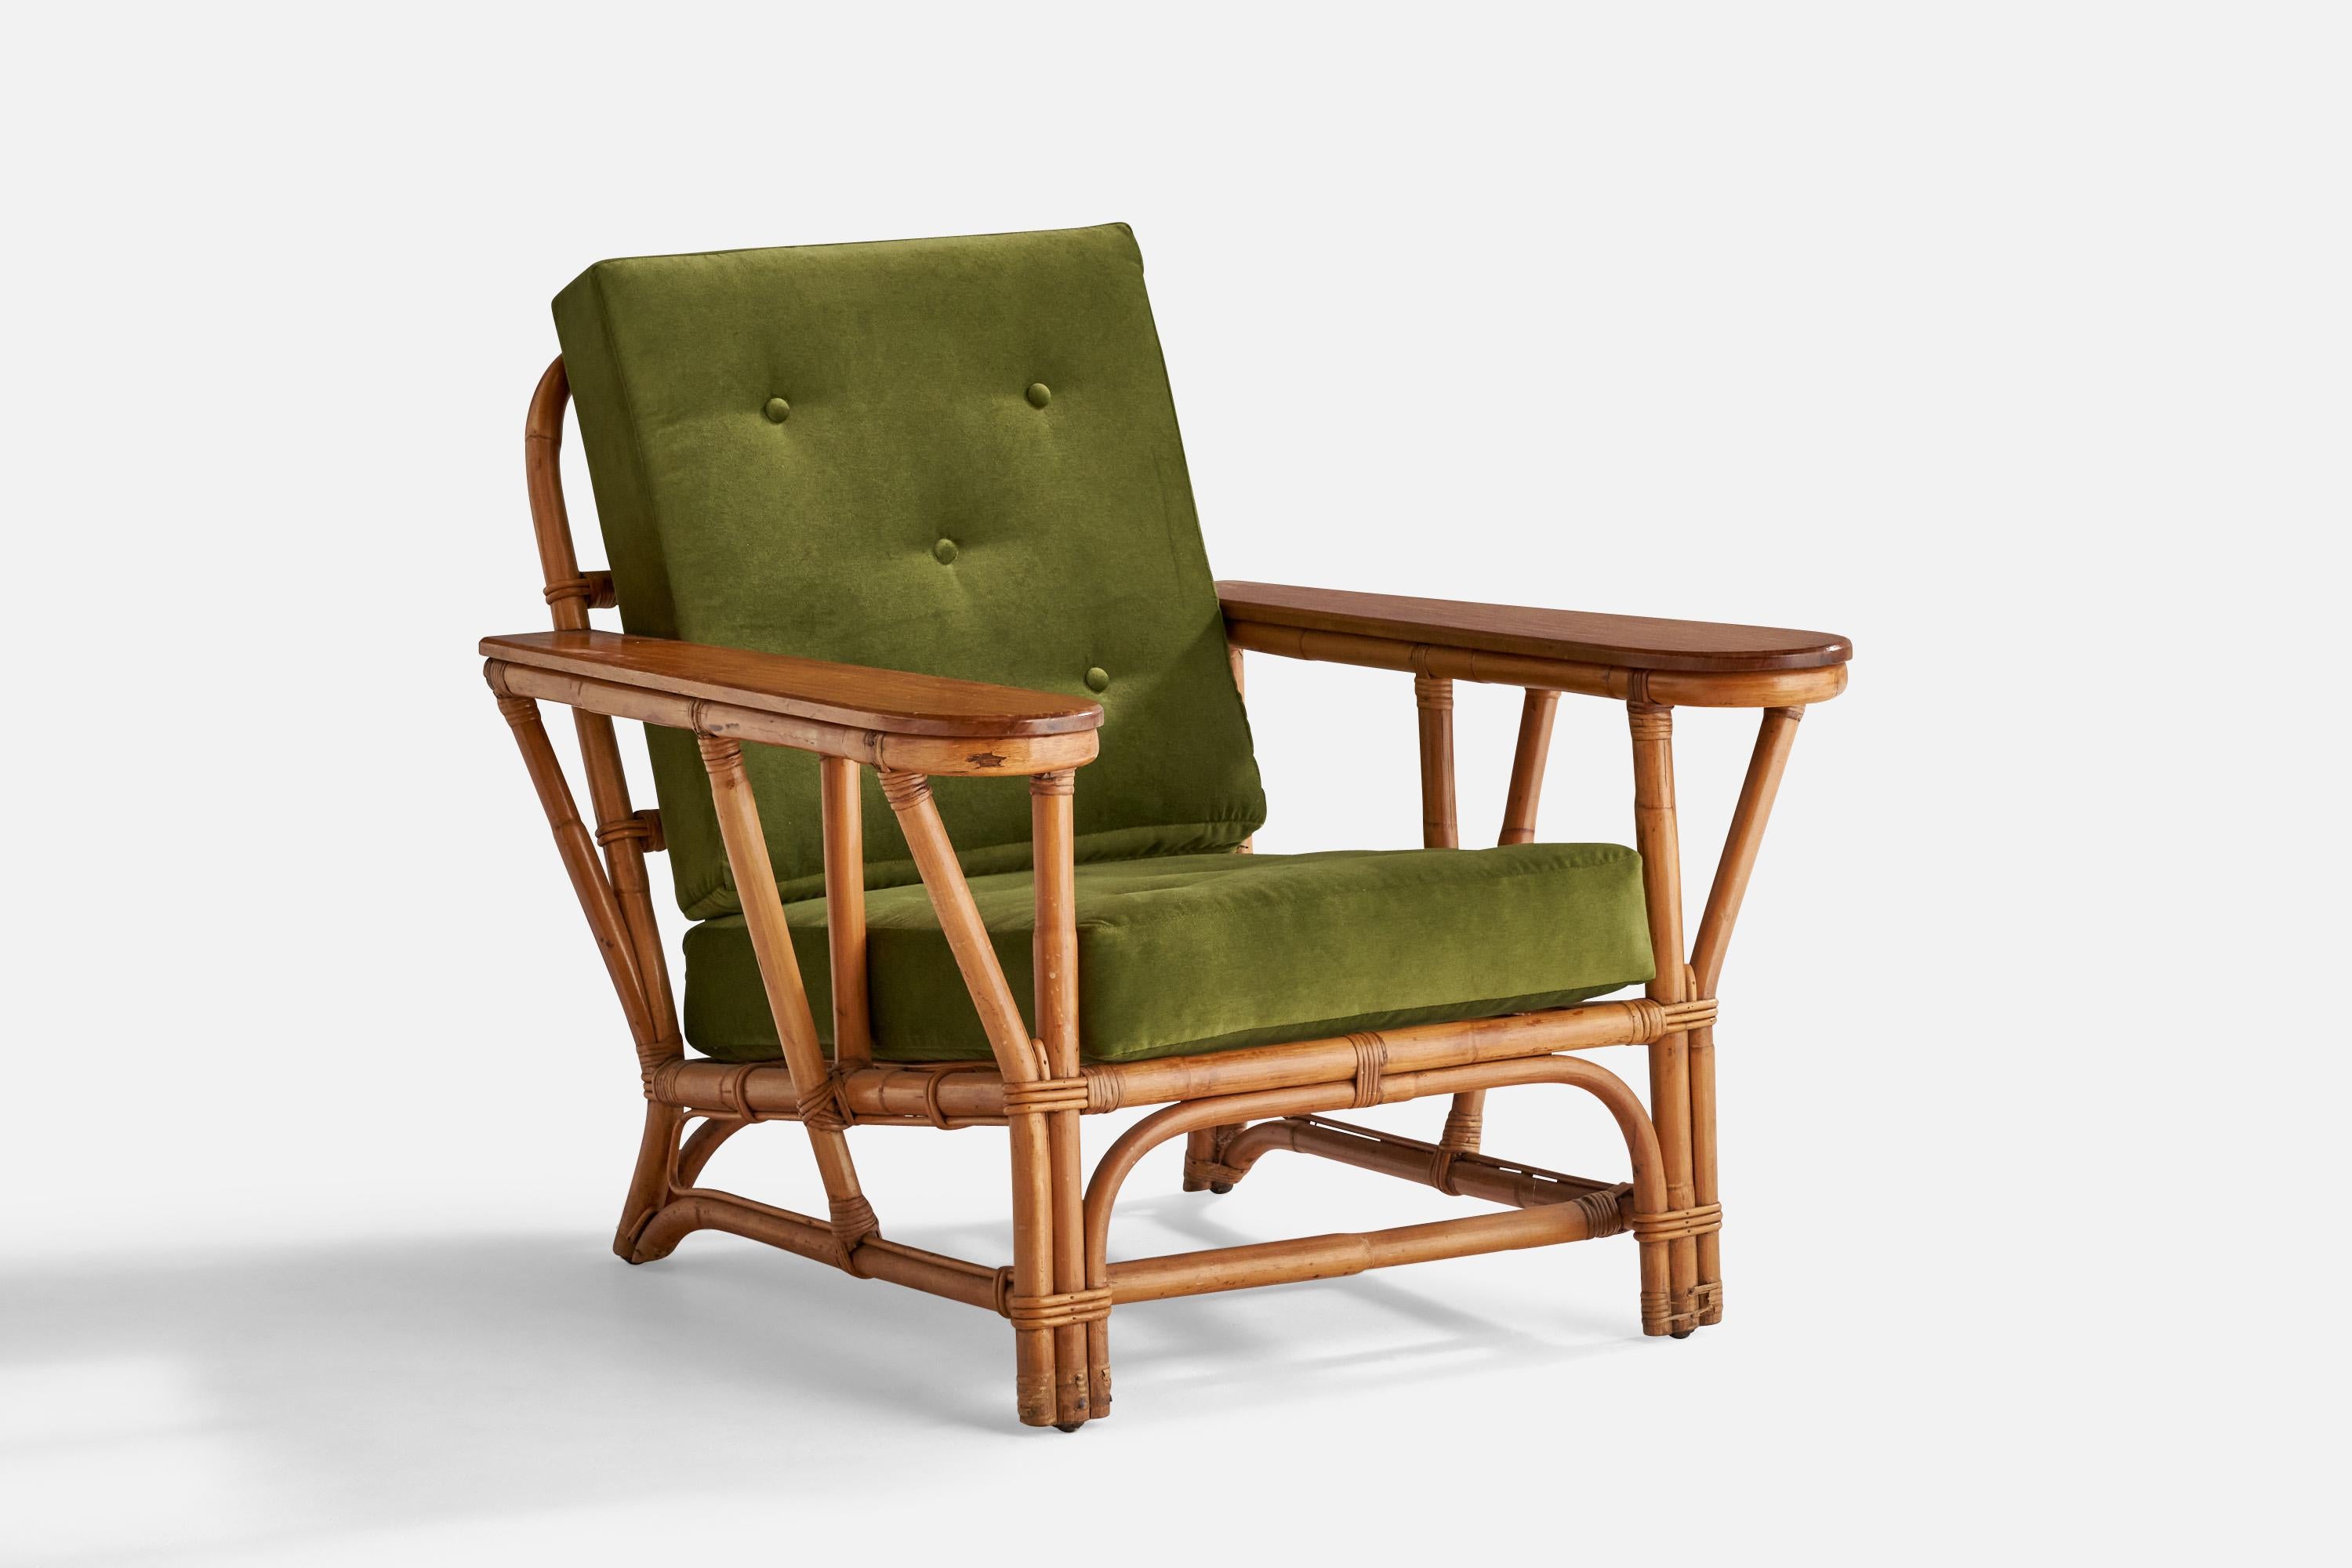 Ein Loungesessel aus grünem Samt, Ahorn, Bambus und Rattan, entworfen und hergestellt in den USA, 1950er Jahre.

Sitzhöhe: 16,5
